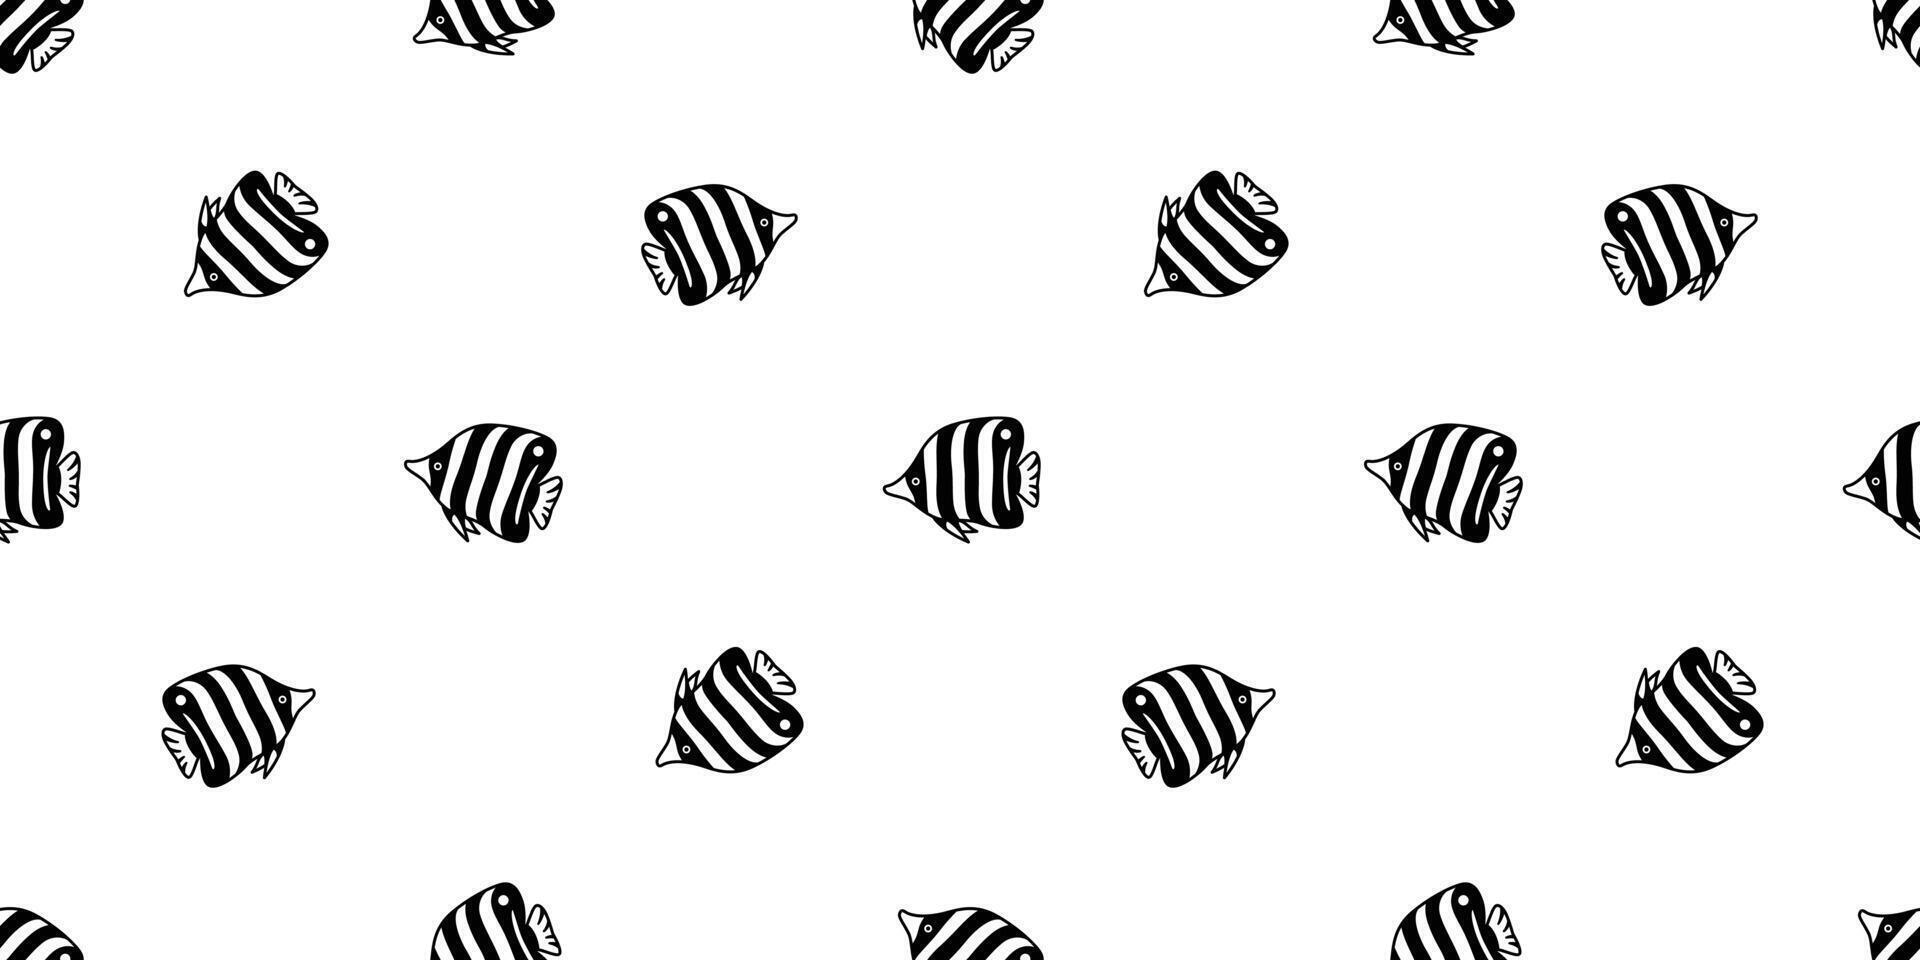 peixe desatado padronizar borboleta salmão rabisco atum Tubarão desenho animado cachecol isolado golfinho baleia oceano mar telha fundo repetir papel de parede ilustração animal vetor